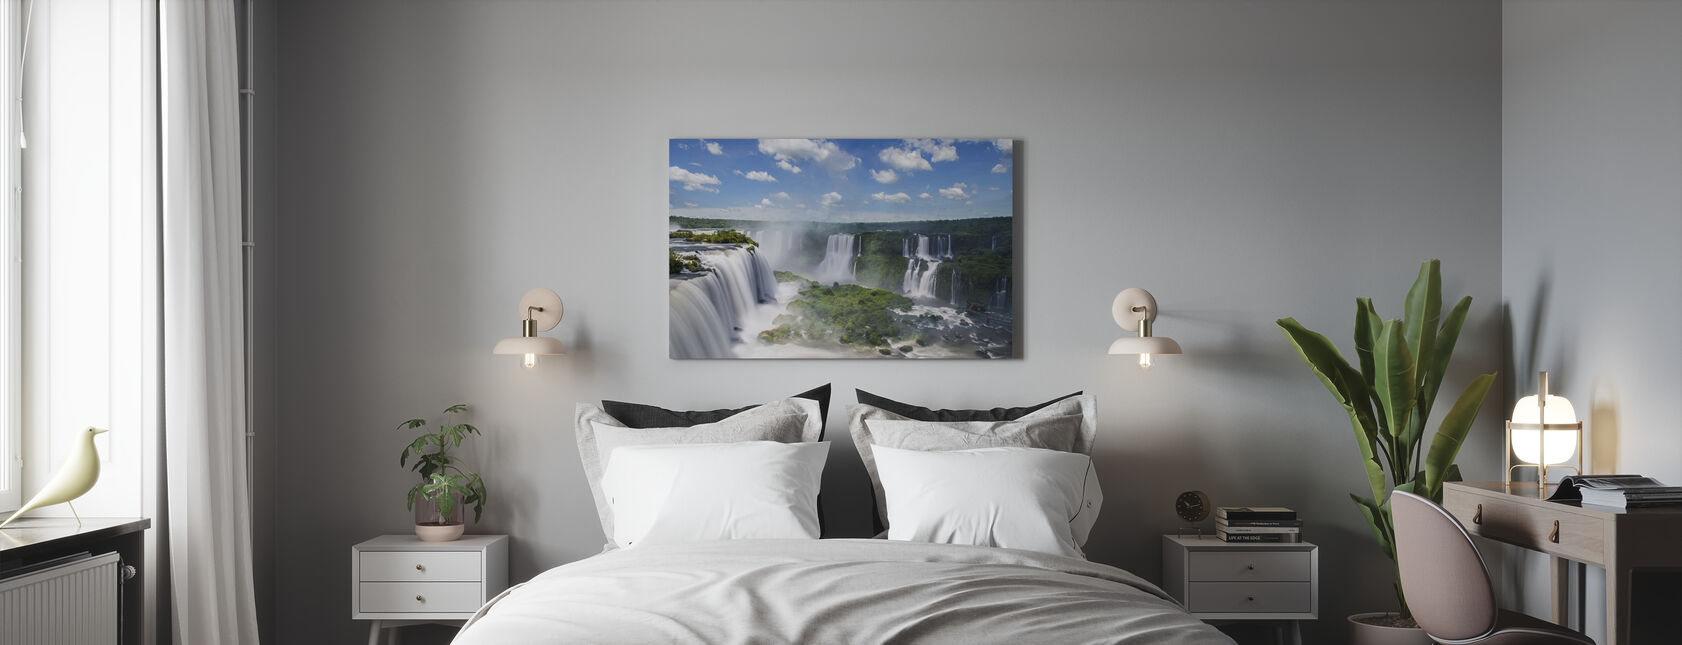 Iguazu-waterval - Canvas print - Slaapkamer